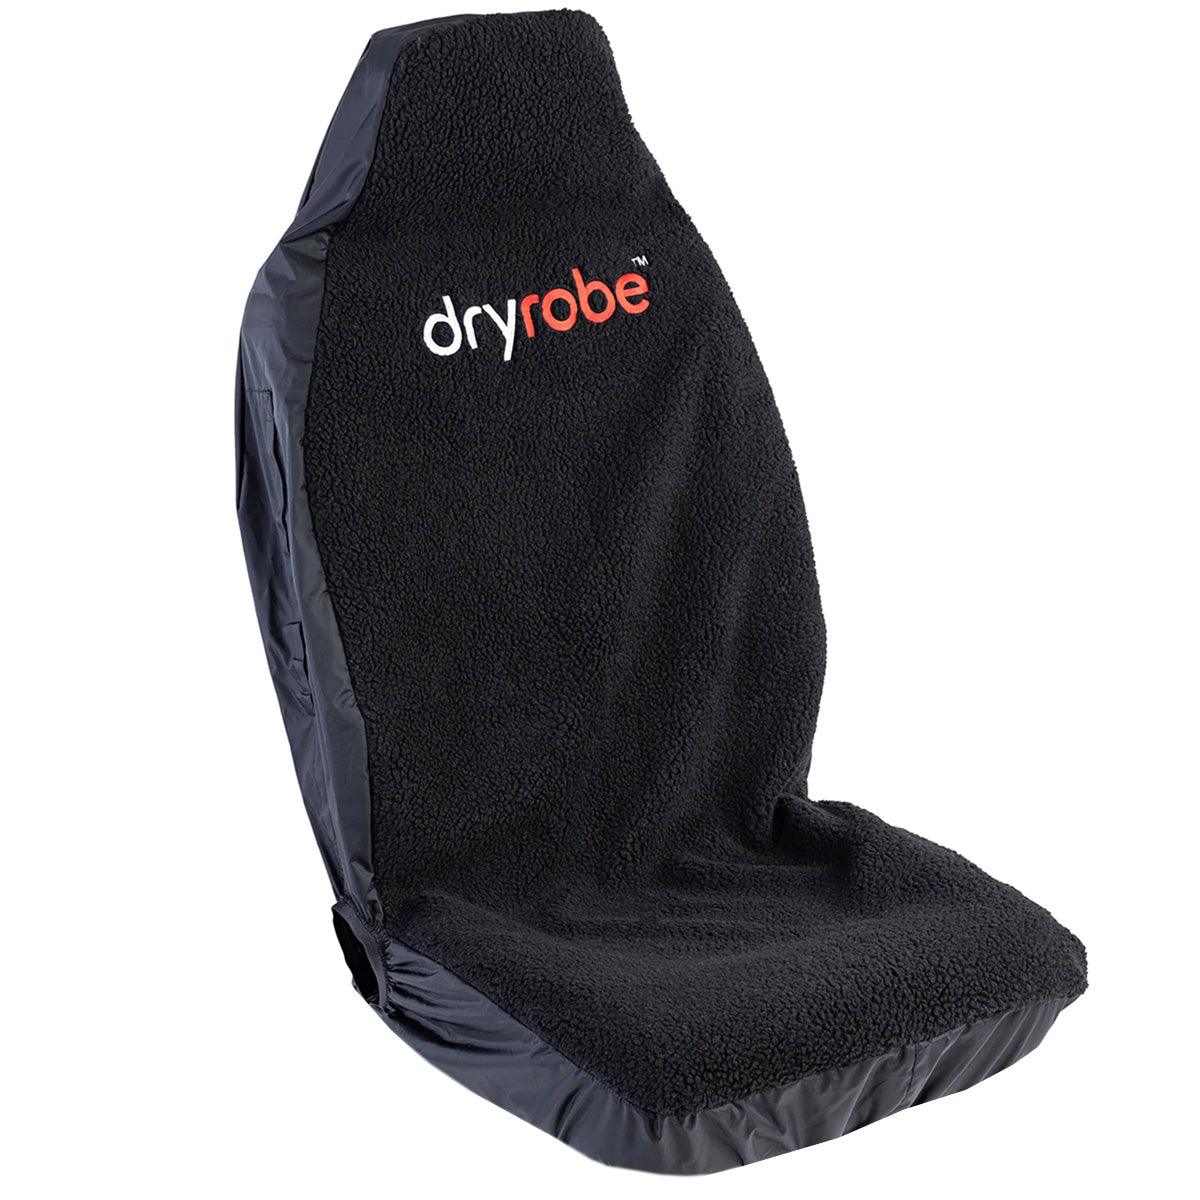 Dryrobe Car Seat Cover - Kiteshop.com